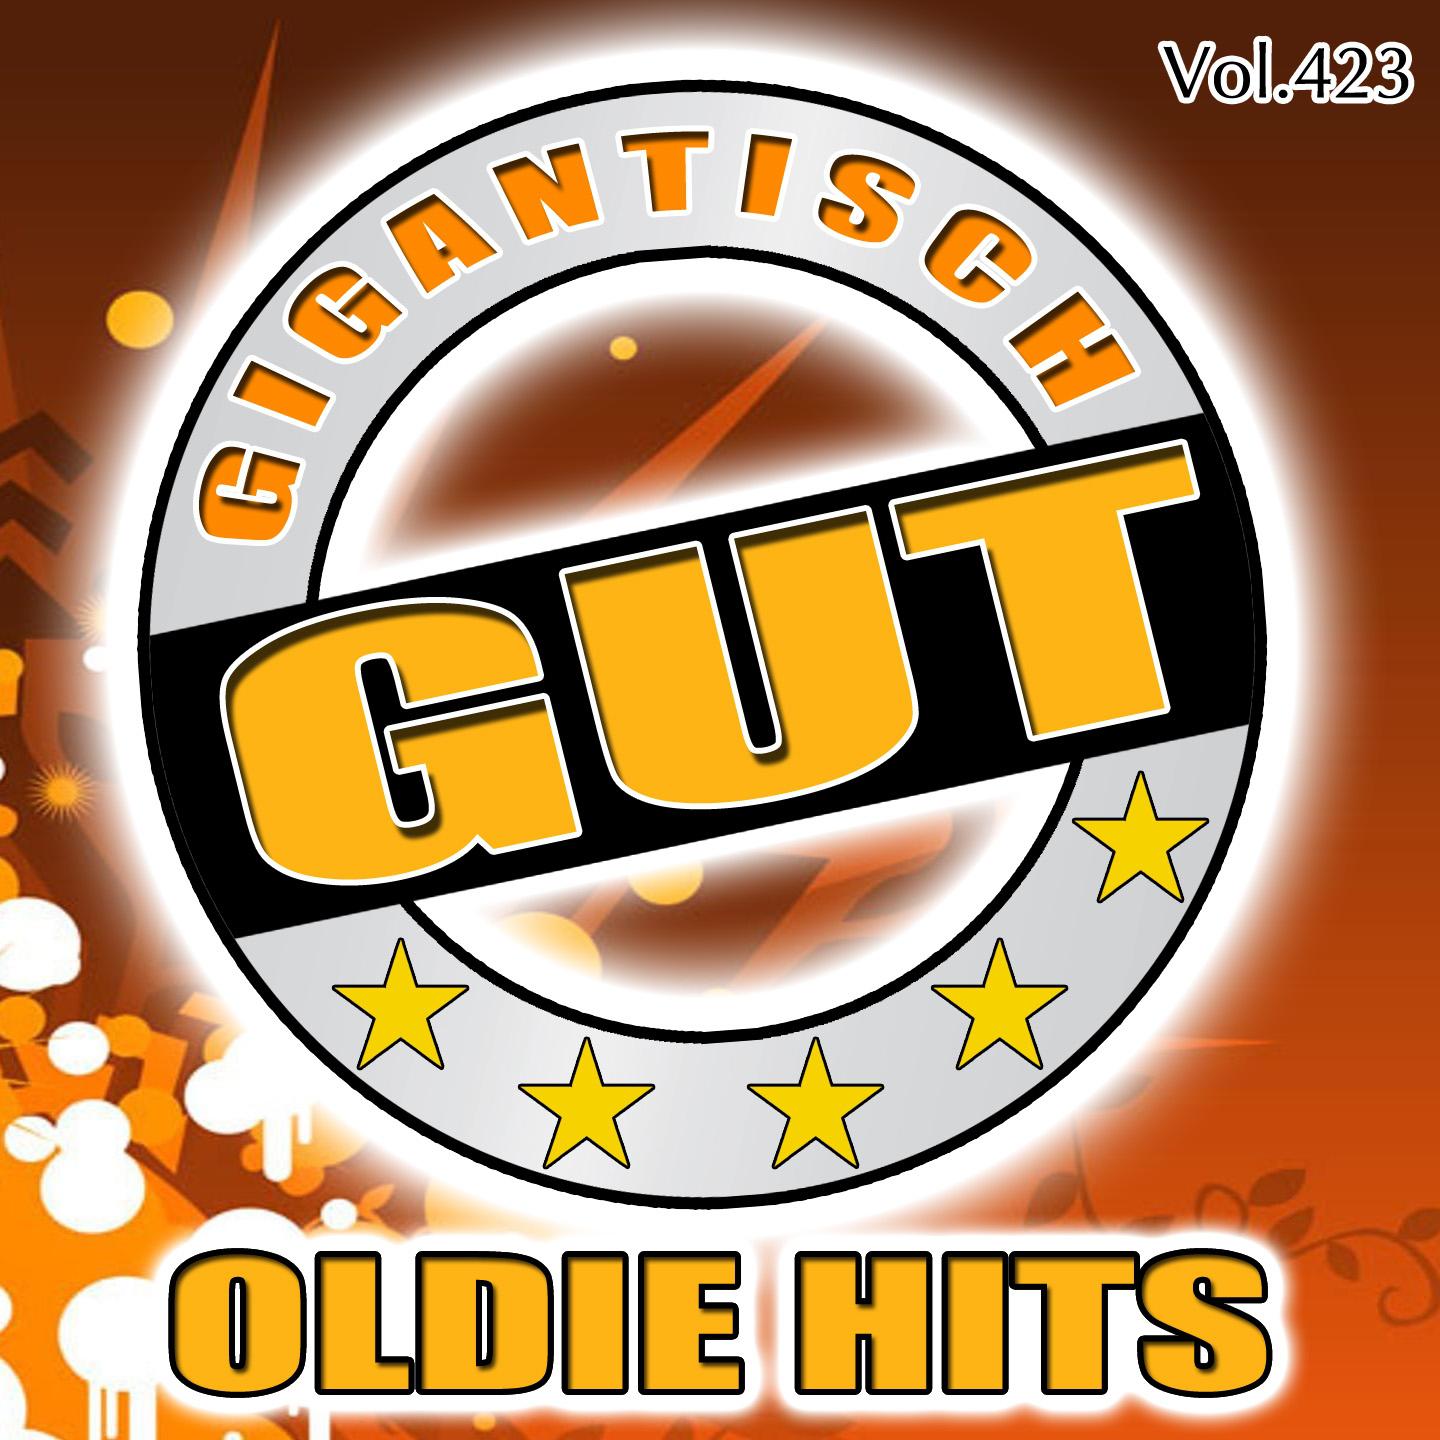 Gigantisch Gut: Oldie Hits, Vol. 423